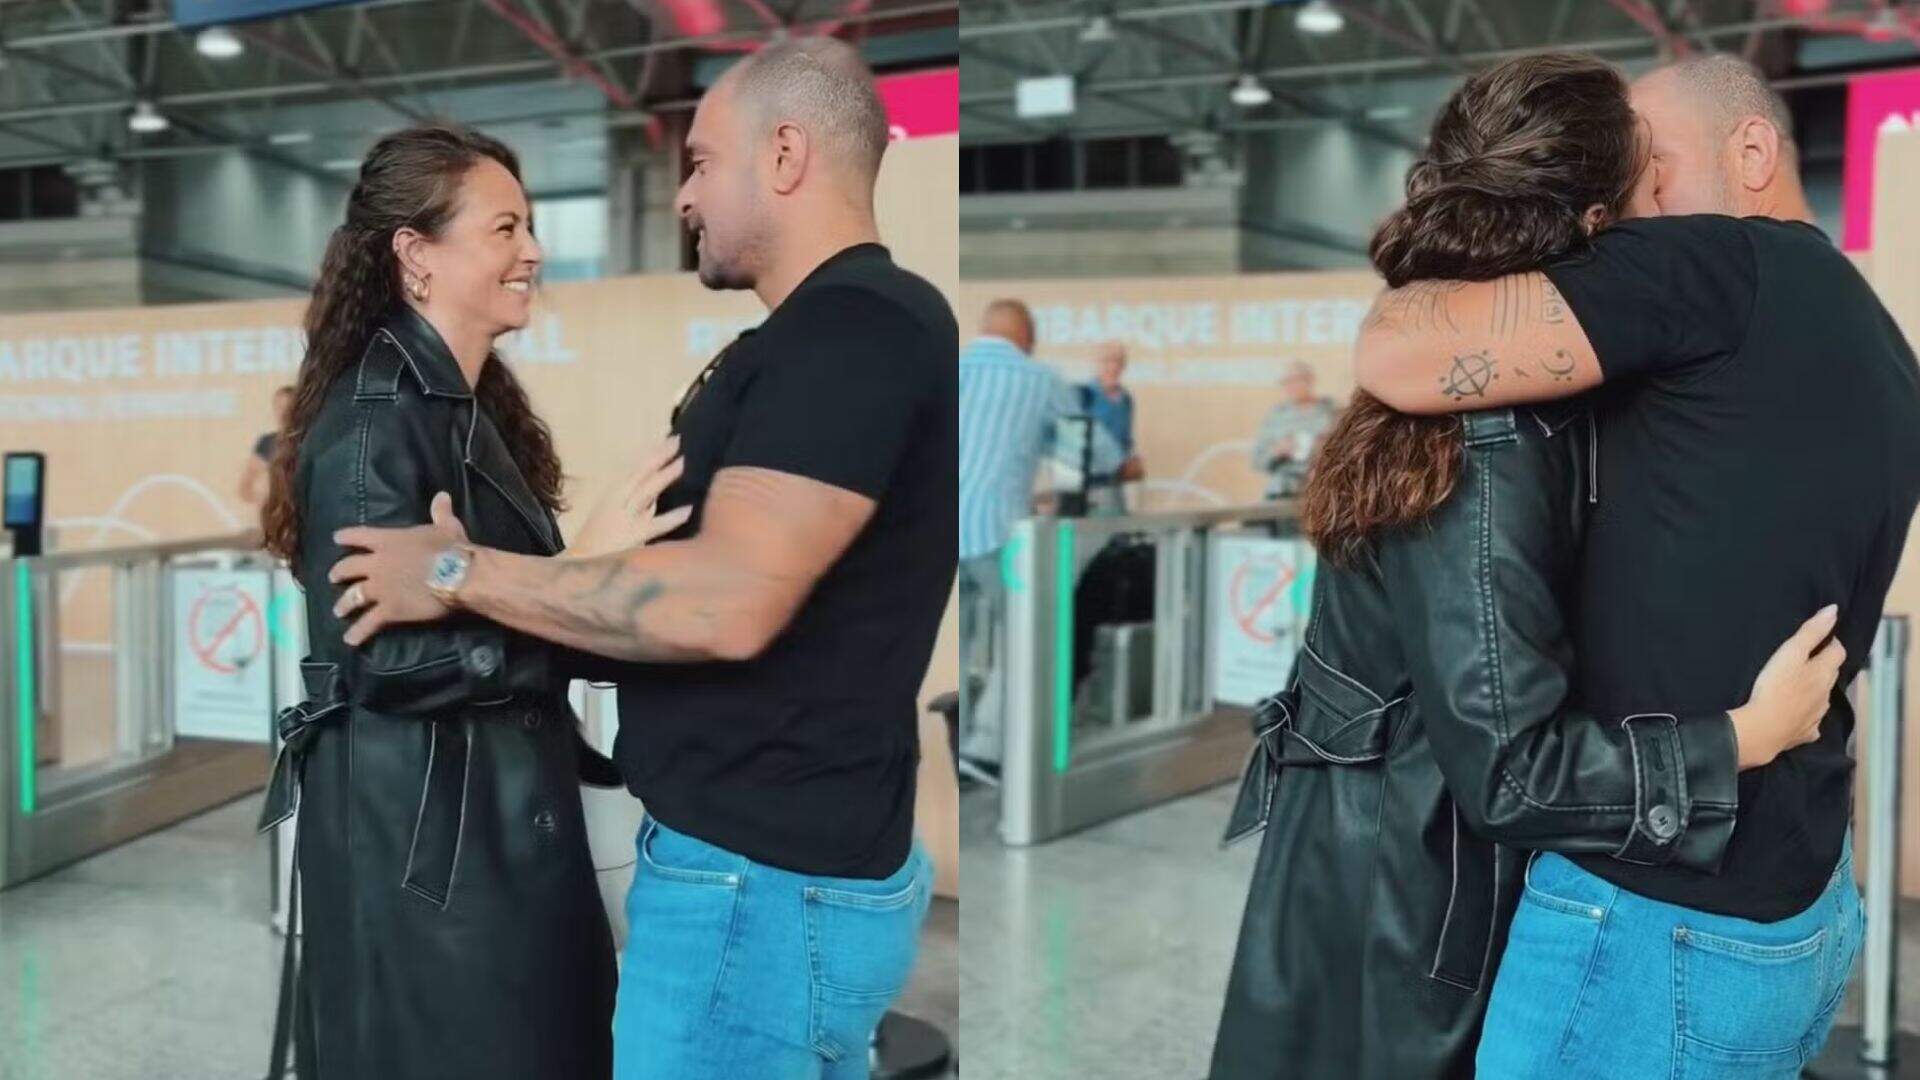 Paolla Oliveira e Diogo Nogueira protagonizam cena de novela durante despedida em aeroporto! - Metropolitana FM